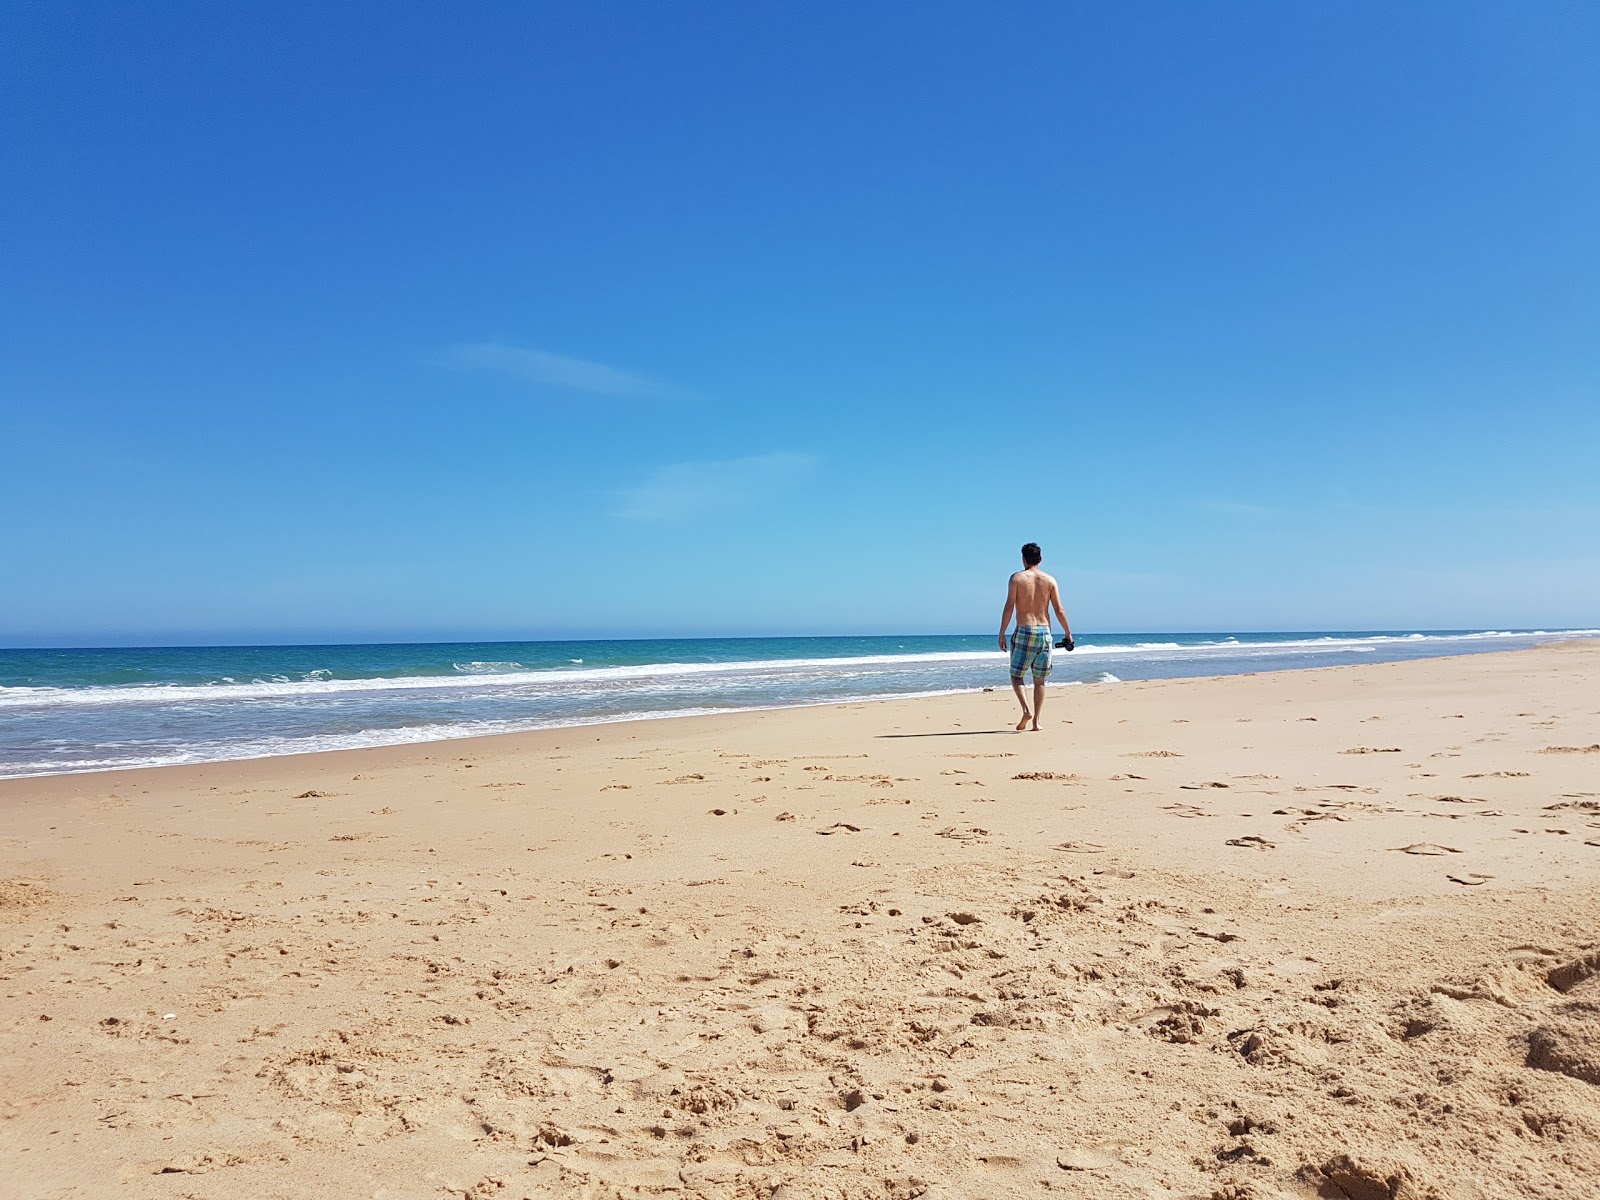 Fotografie cu Mcloughlins Beach - locul popular printre cunoscătorii de relaxare